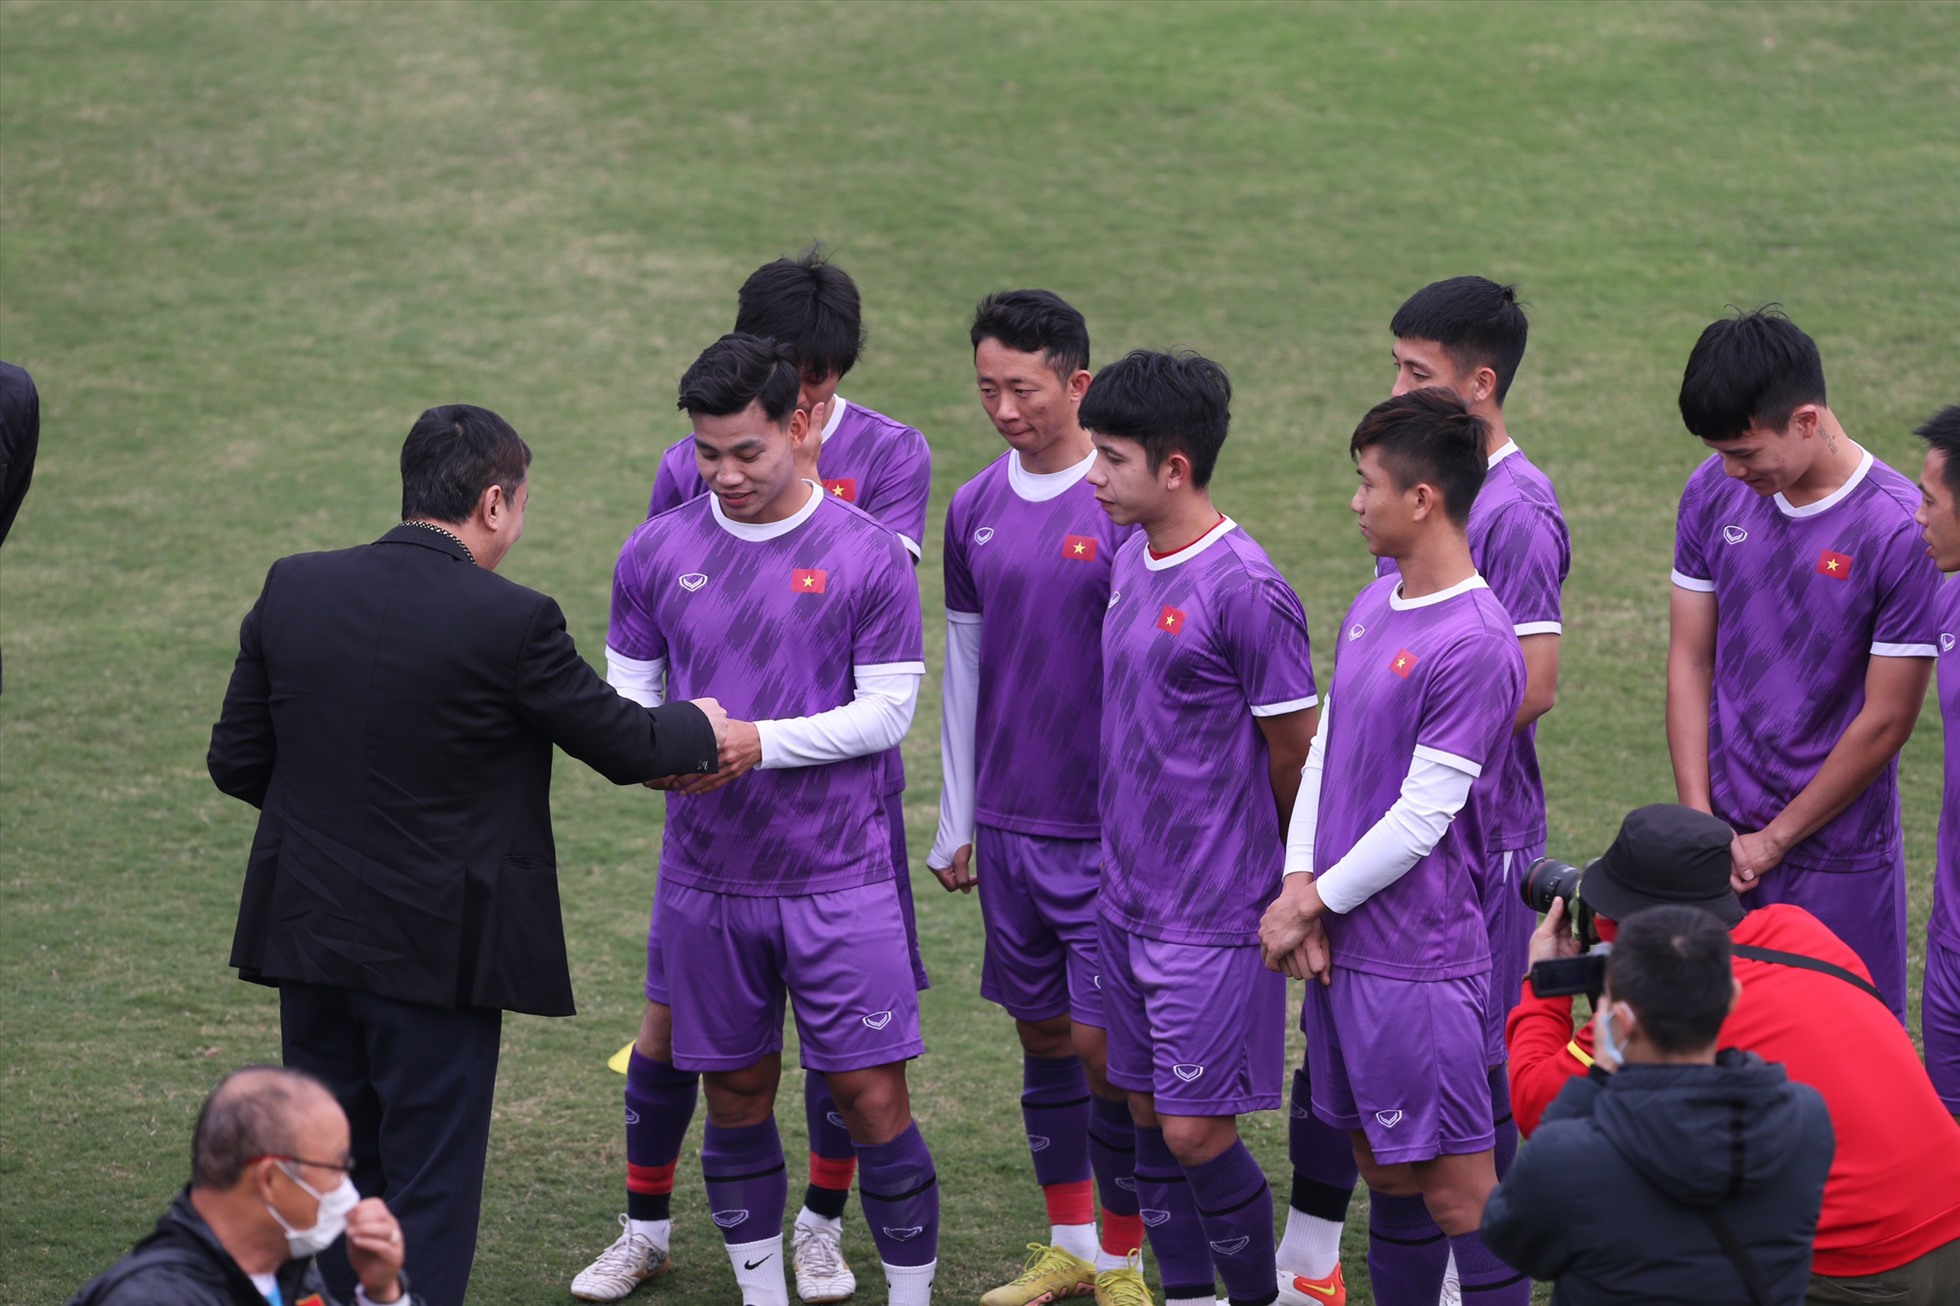 Chủ tịch VFF biểu dương tinh thần thi đấu, những nỗ lực và kết quả đạt được của thầy trò huấn luyện viên Park Hang-seo trong chặng đường vừa qua tại AFF Cup 2022. Ông Trần Quốc Tuấn cũng có những phong bao lì xì đầu năm dành cho các thành viên đội tuyển. Ảnh: Xuân Trang